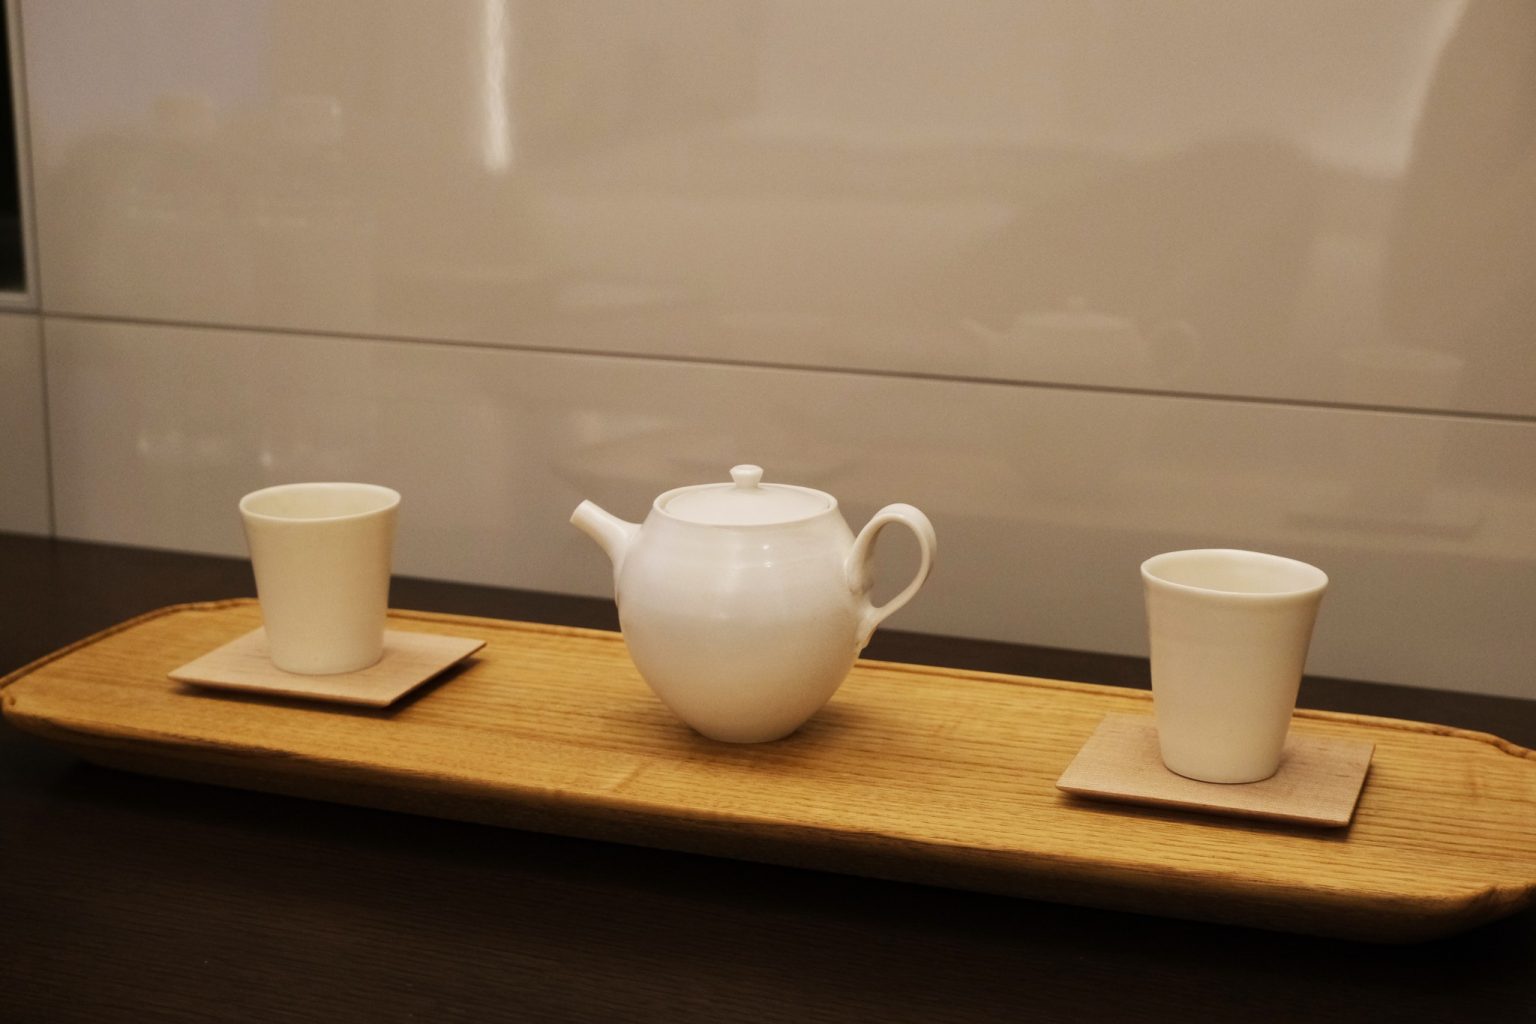 佃眞吾・内田智裕「客室ティーセット」
各客室では、京都にゆかりがある作家が作った器などを手にとることができる。